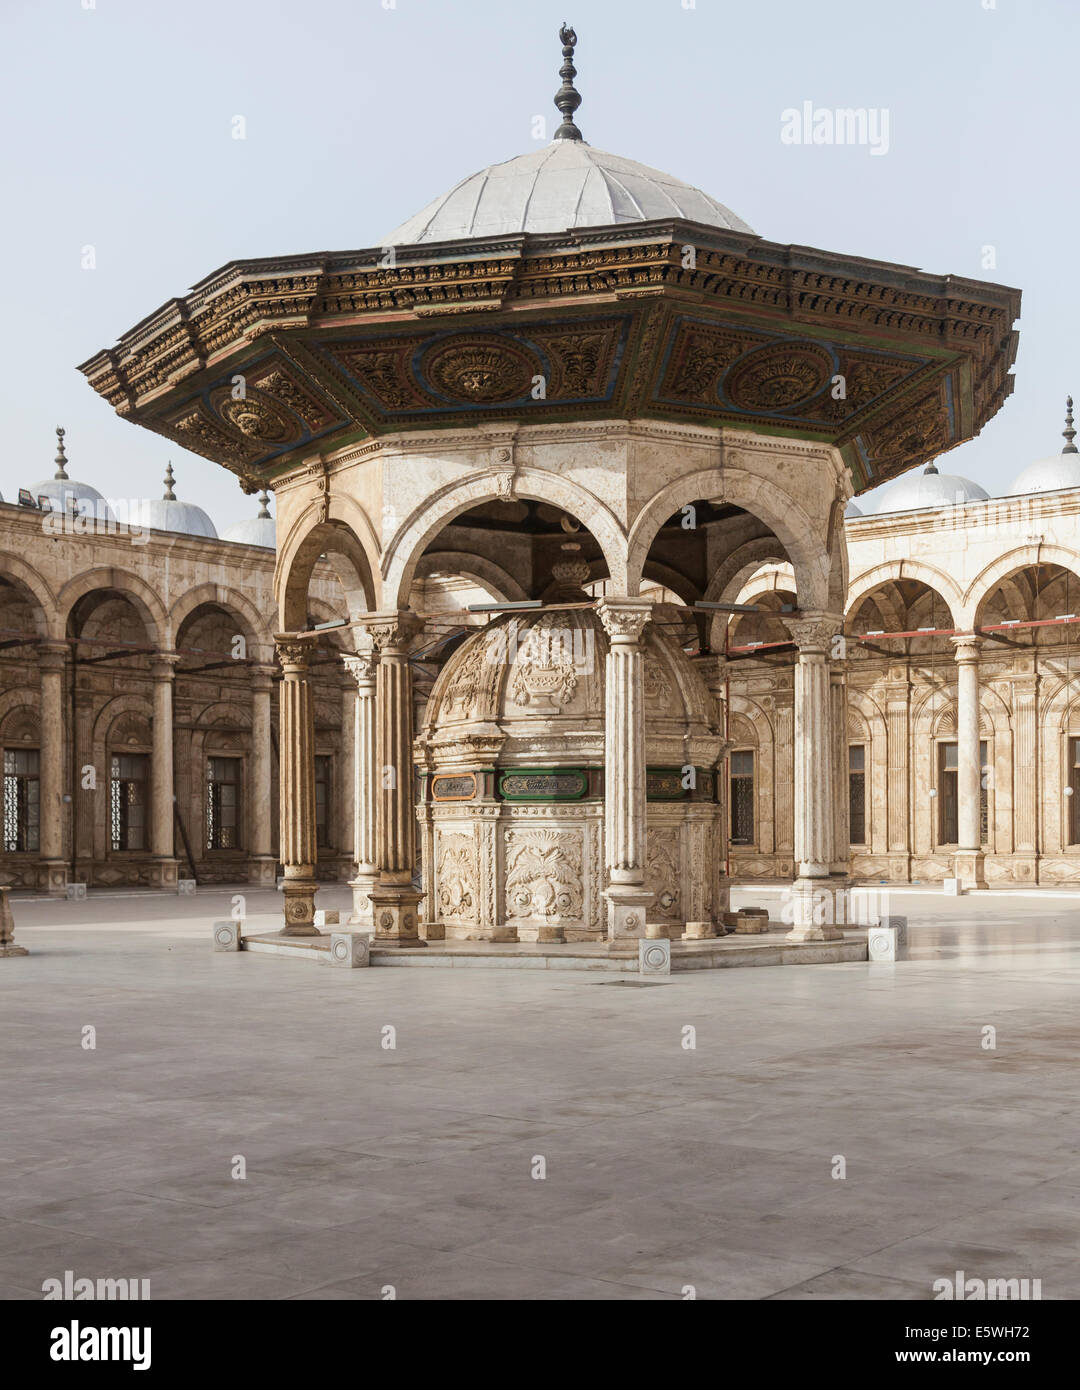 Zitadelle von Kairo, Ägypten - Innenhof in der Alabaster-Moschee oder die Moschee von Muhammad Ali Pasha Stockfoto